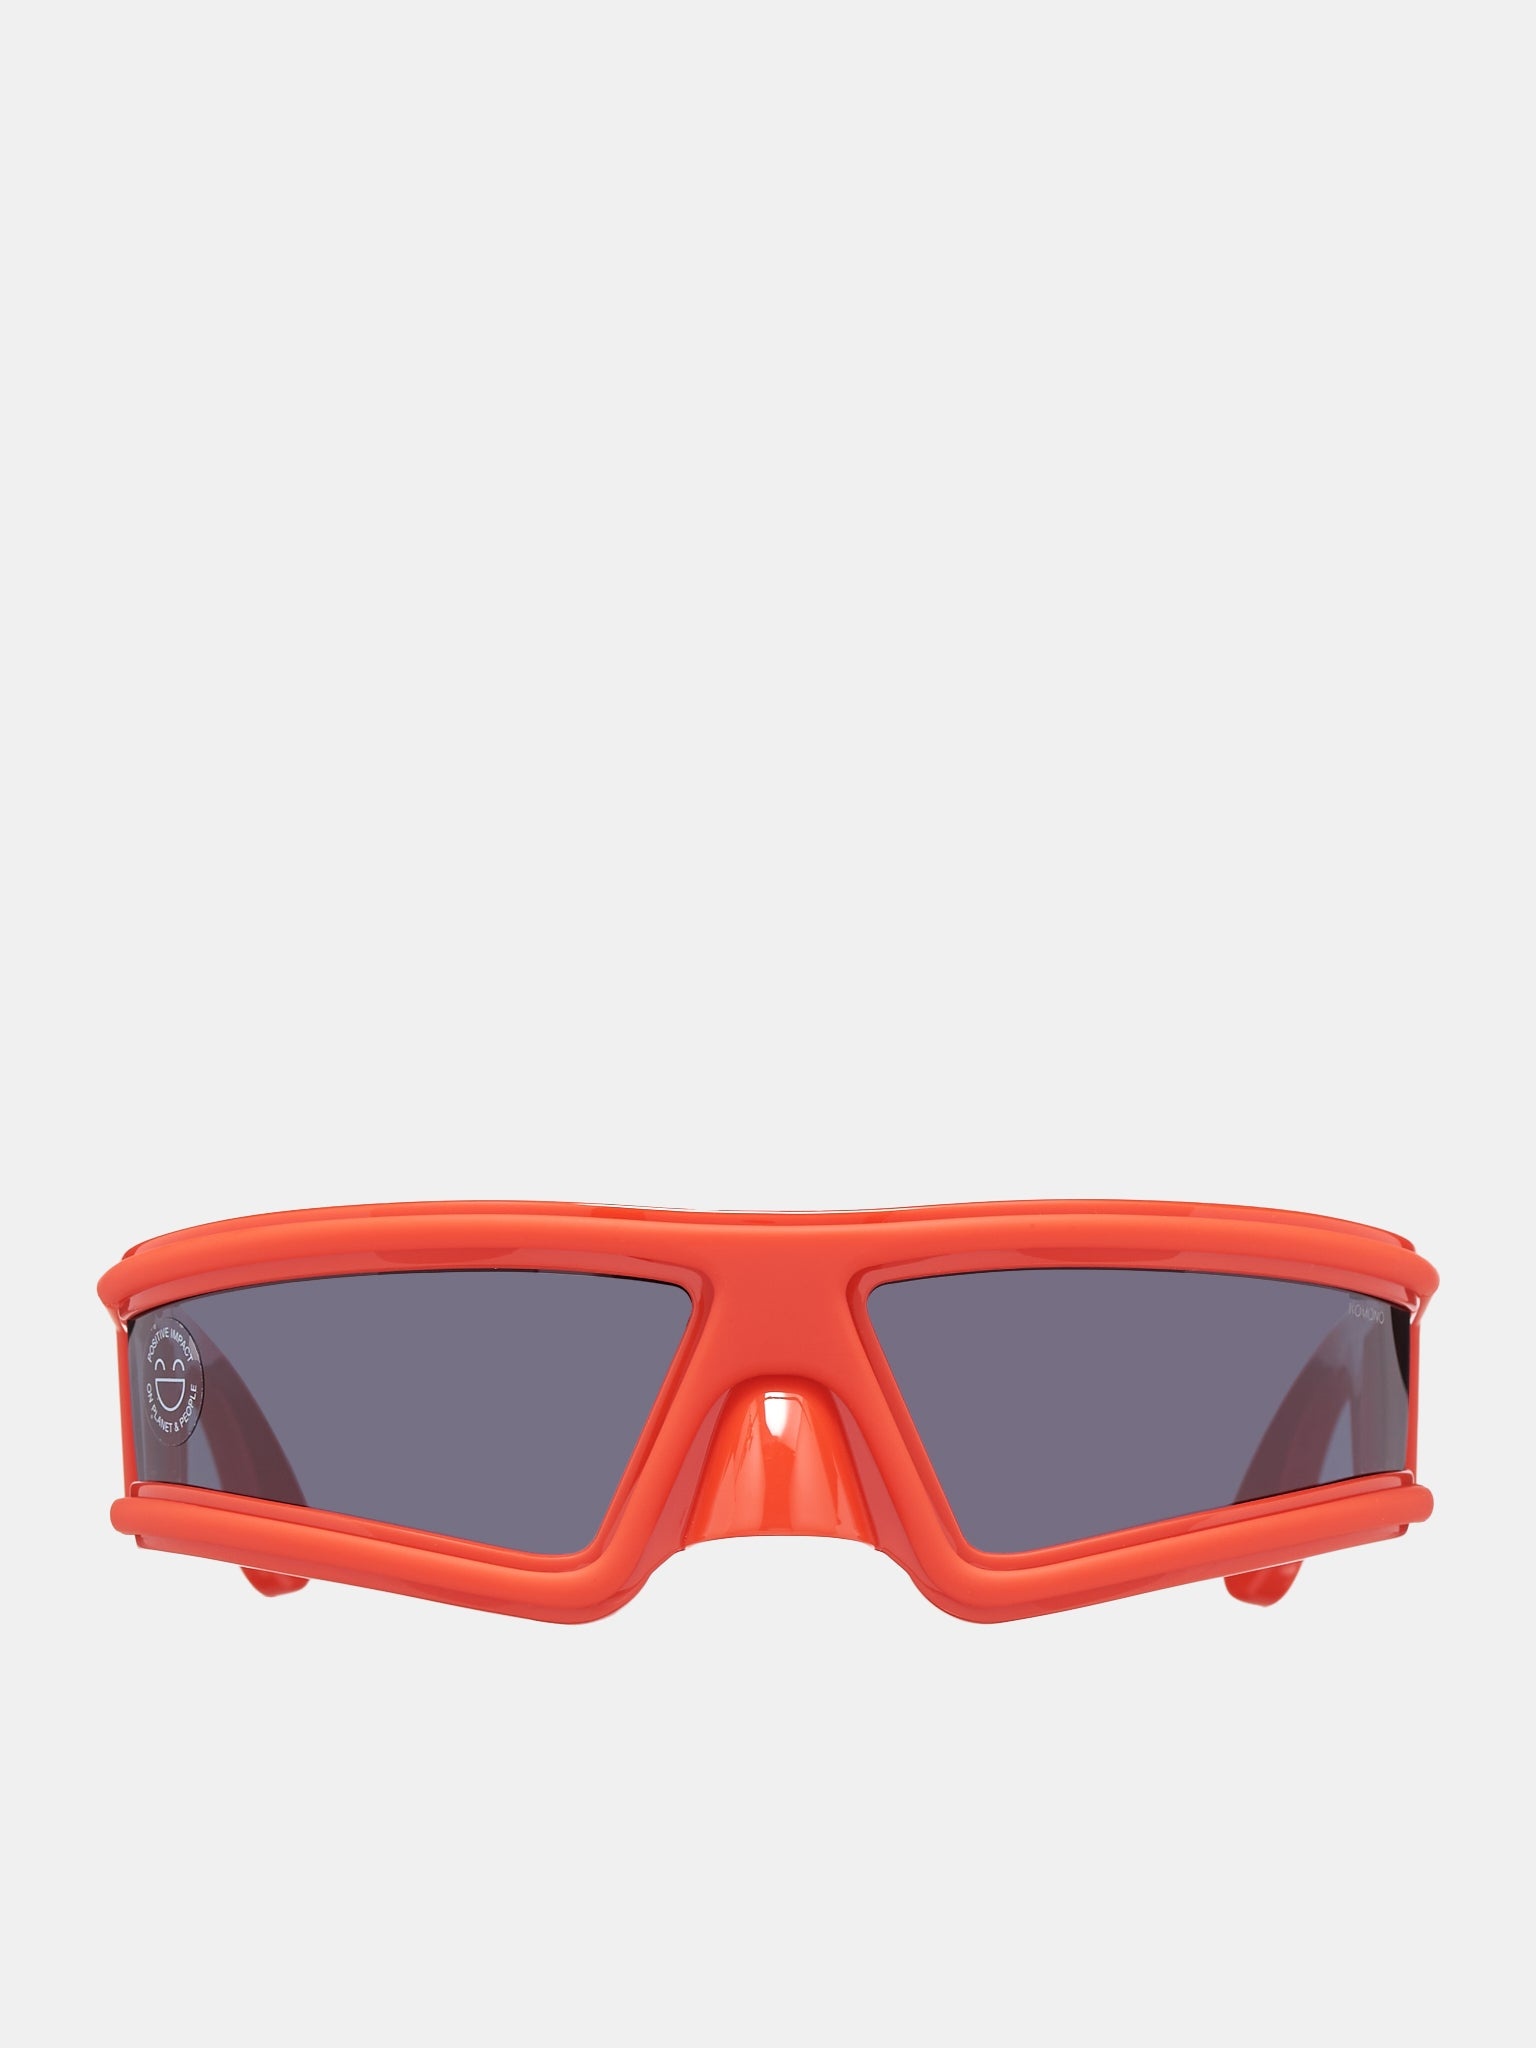 Alien Sunglasses - 1